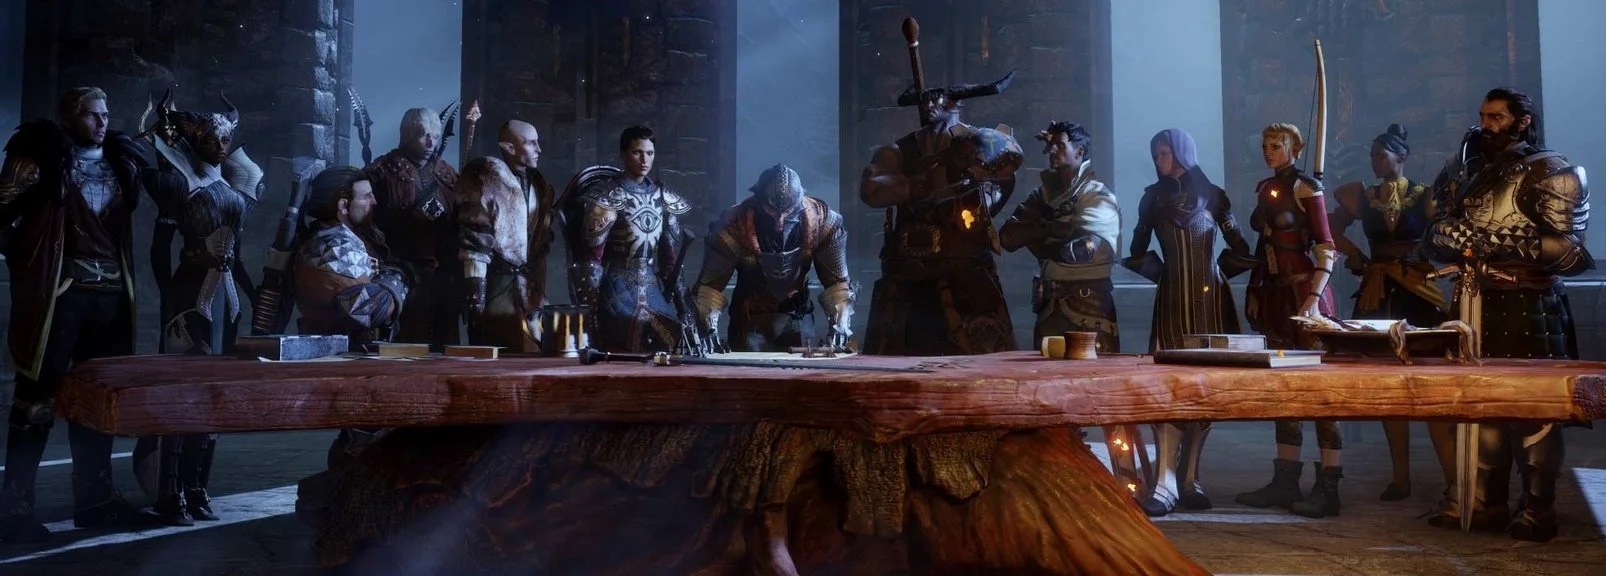 Дэвид Гейдер больше не будет работать над Dragon Age - фото 4